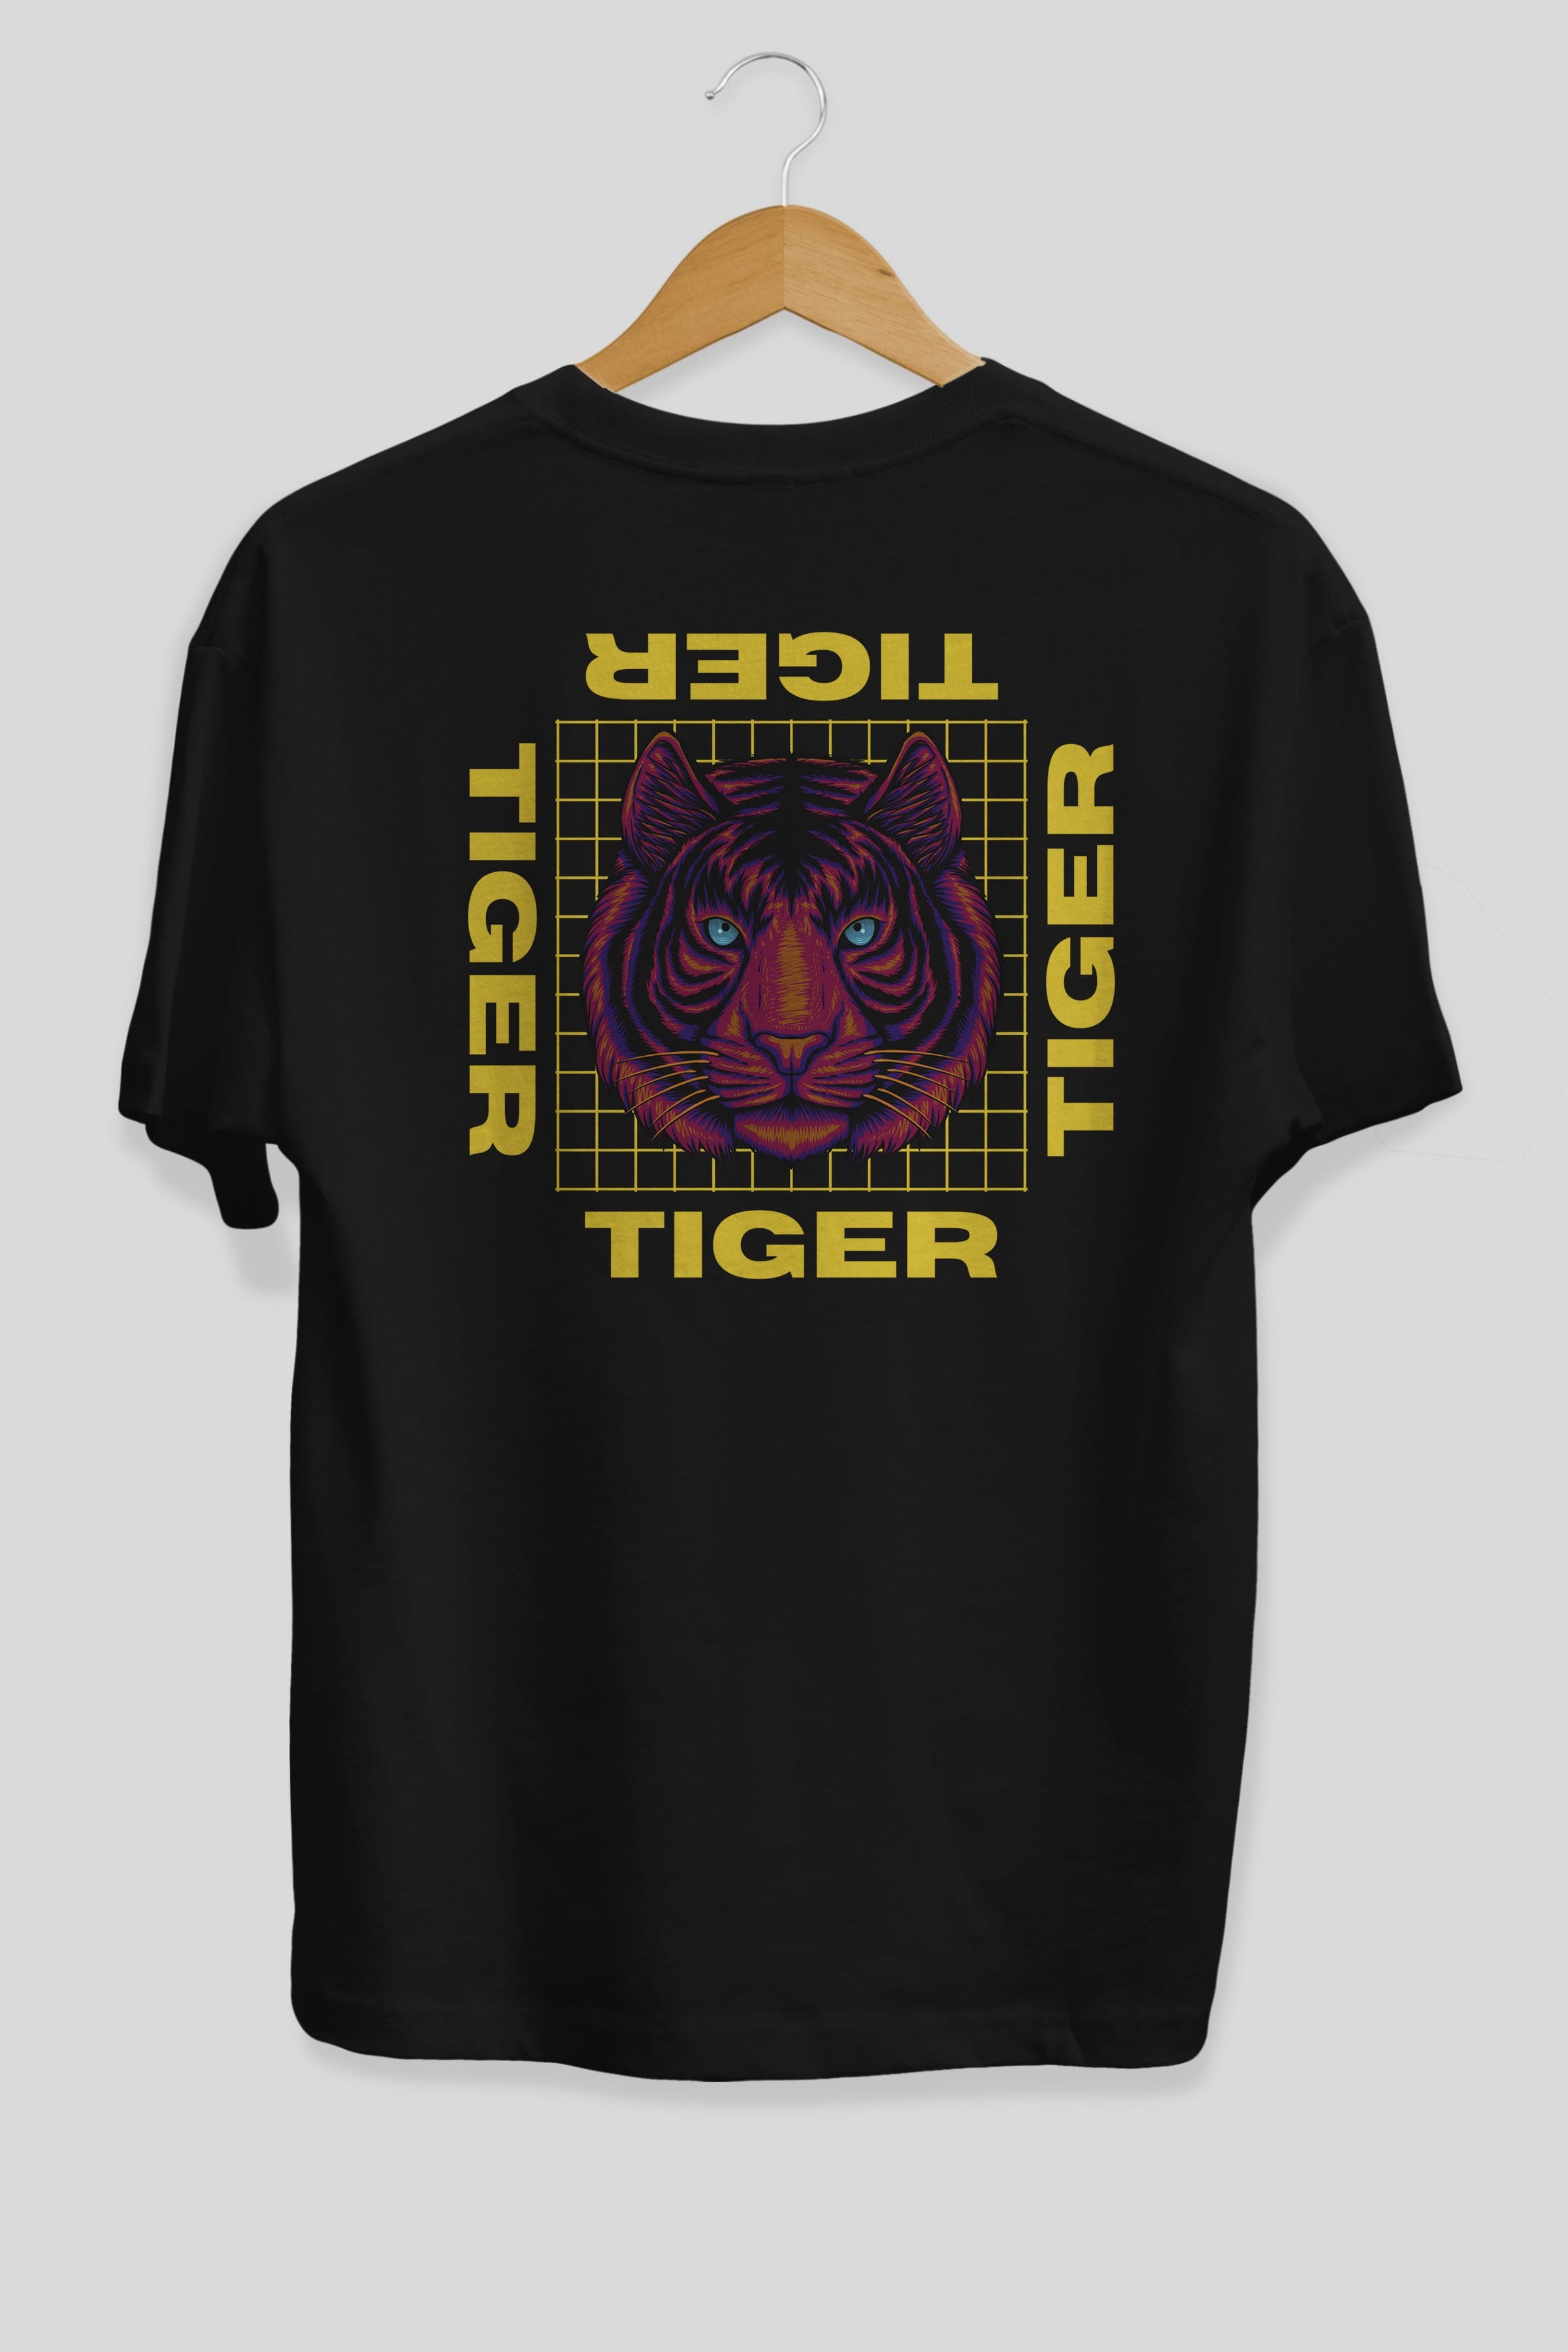 Tiger Yazılı Streetwear Arka Baskılı Oversize t-shirt Erkek Kadın Unisex